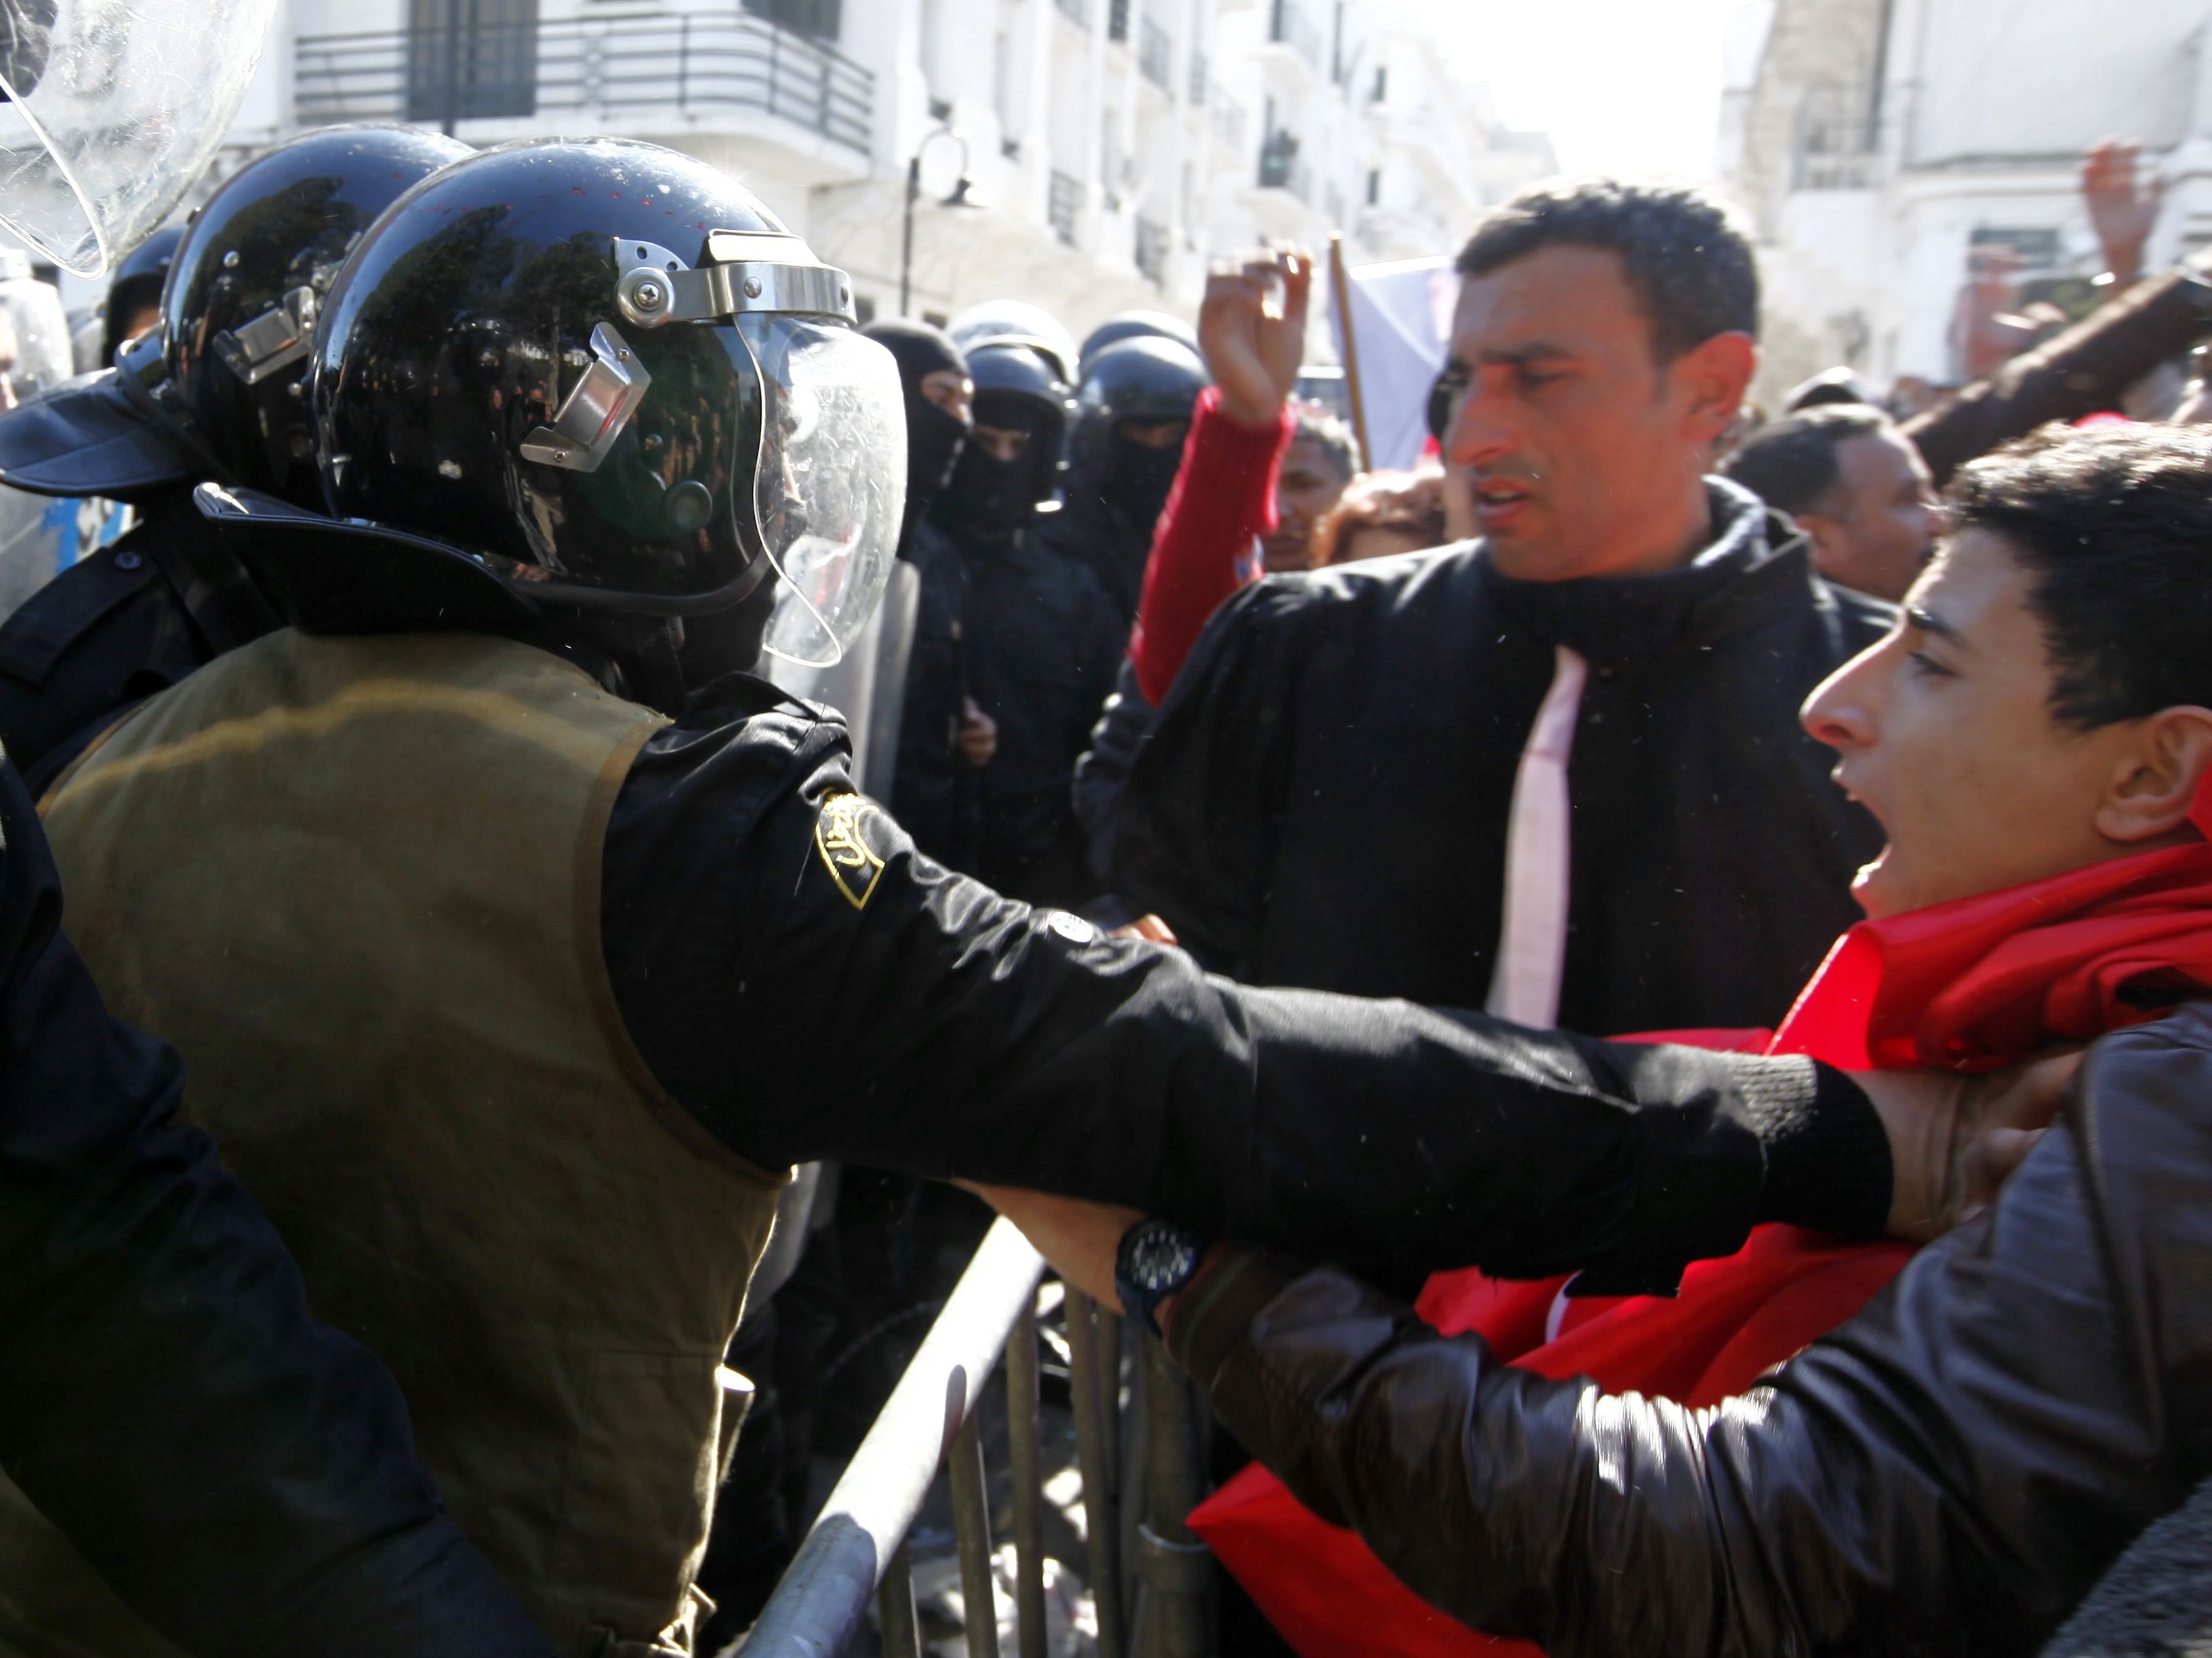 محتجون تونسيون يشتبكون مع شرطة مكافحة الشغب خلال مظاهرة بعد وفاة زعيم المعارضة التونسي شكري بلعيد، خارج وزارة الداخلية في تونس بتاريخ 6 شباط 2013